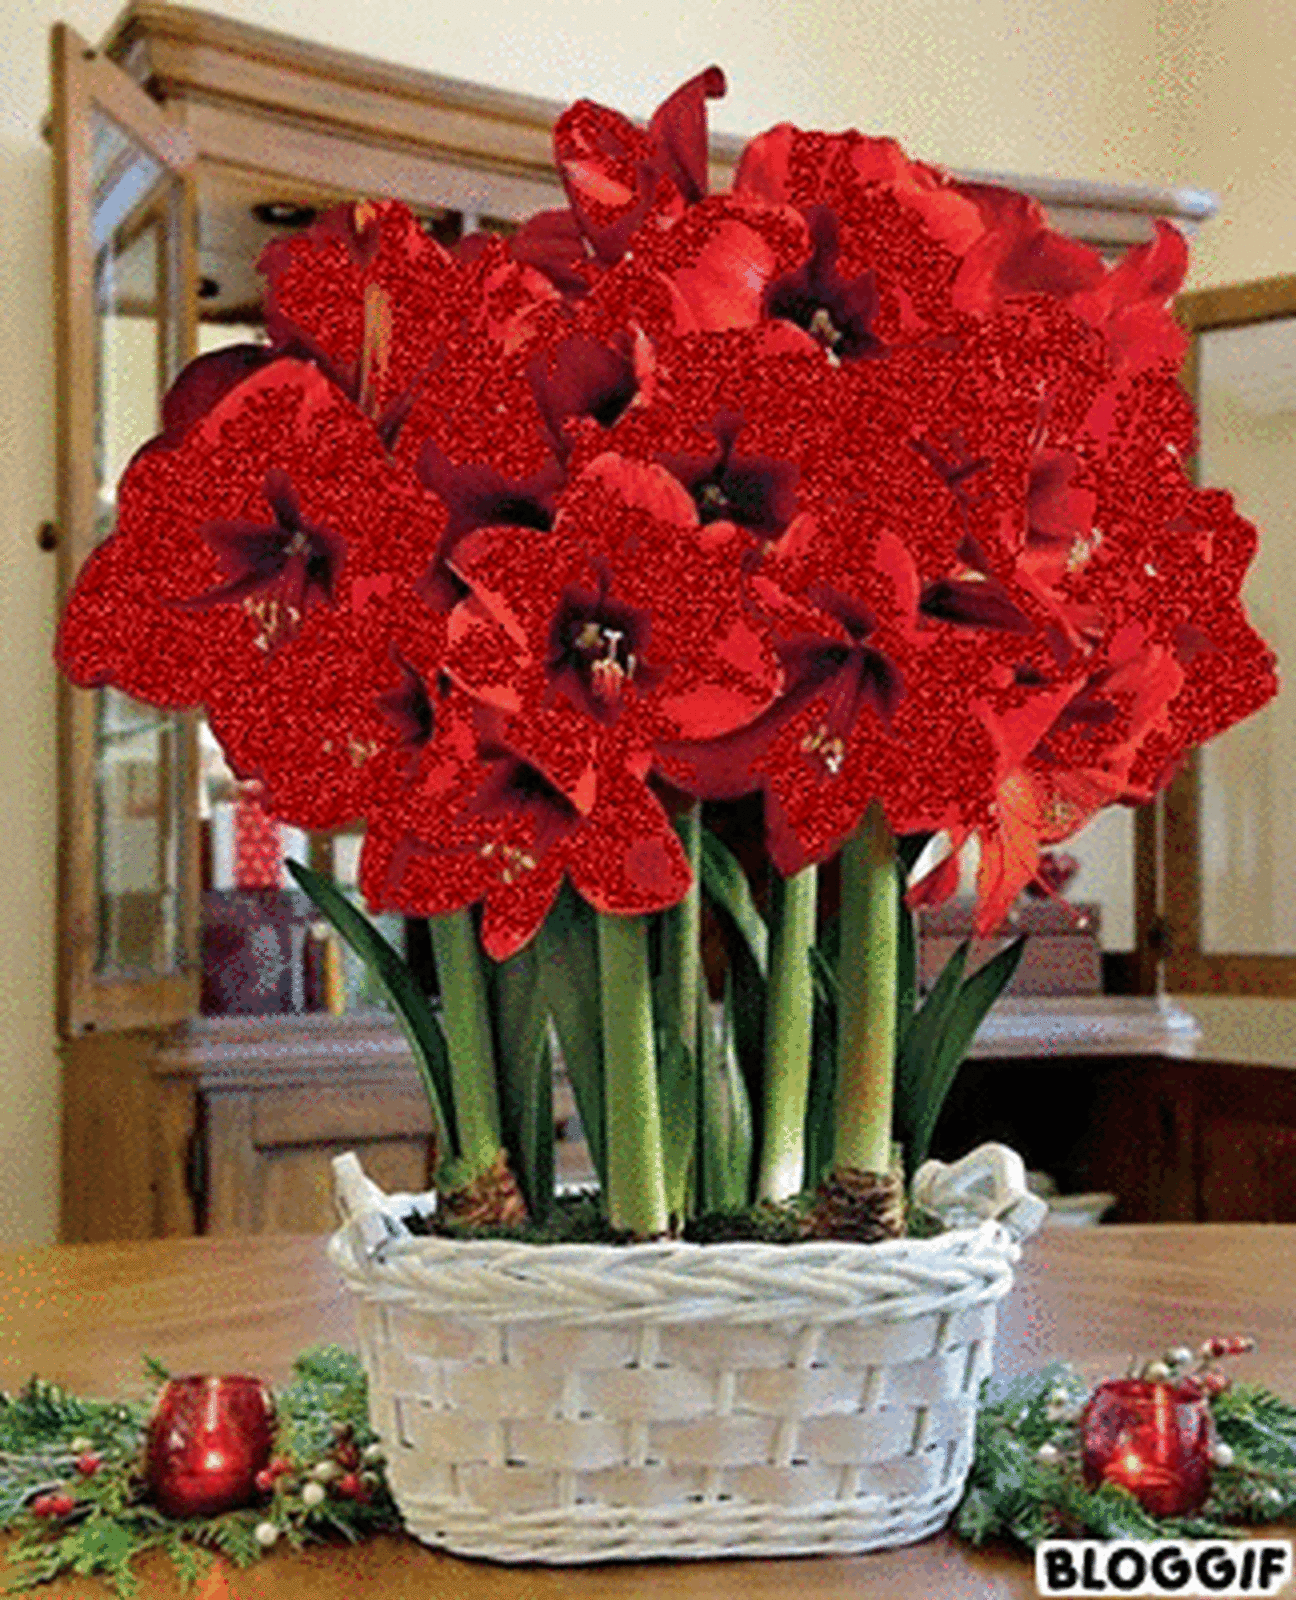 bloggif image resize amaryllis flowers red amaryllis small